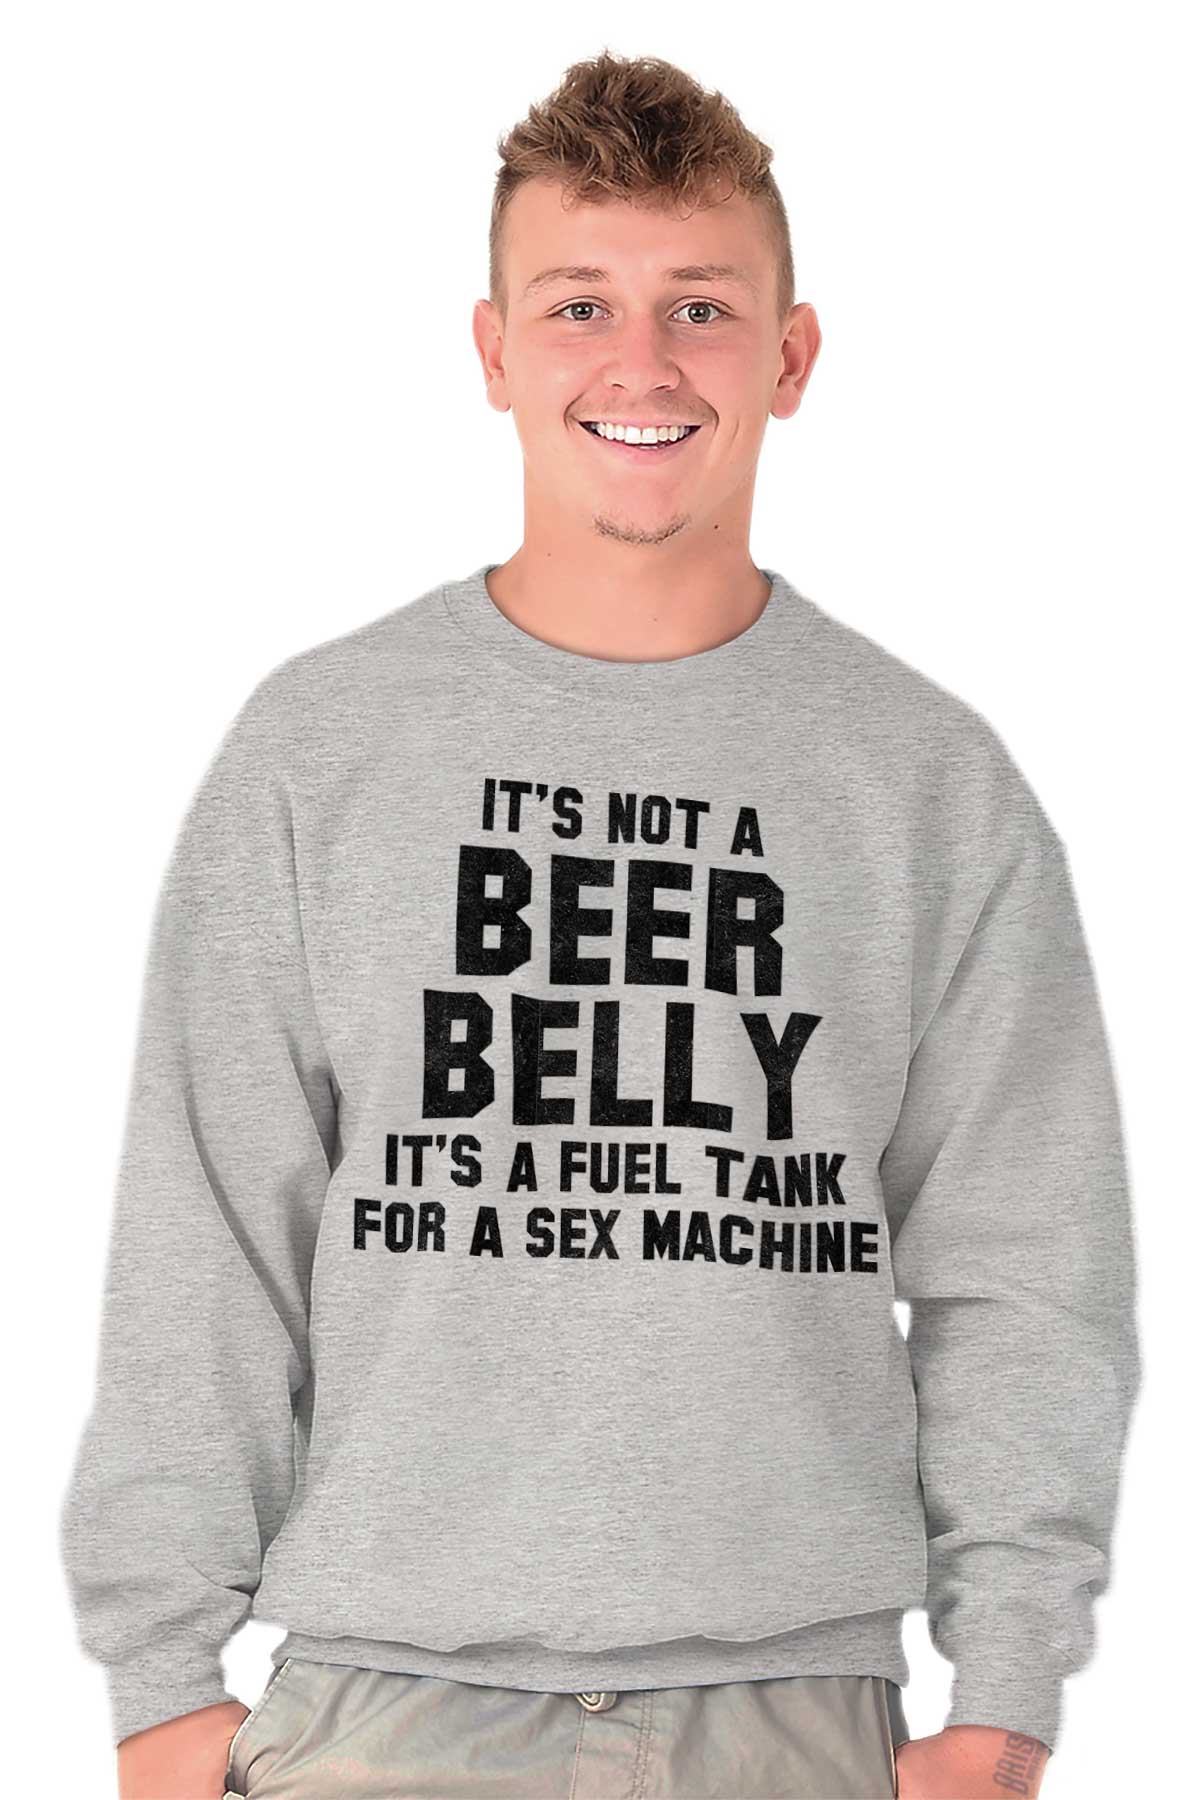 Beer Belly Fuel Tank Sex Machine Funny T Men S Long Sleeve Crew Sweatshirt Ebay